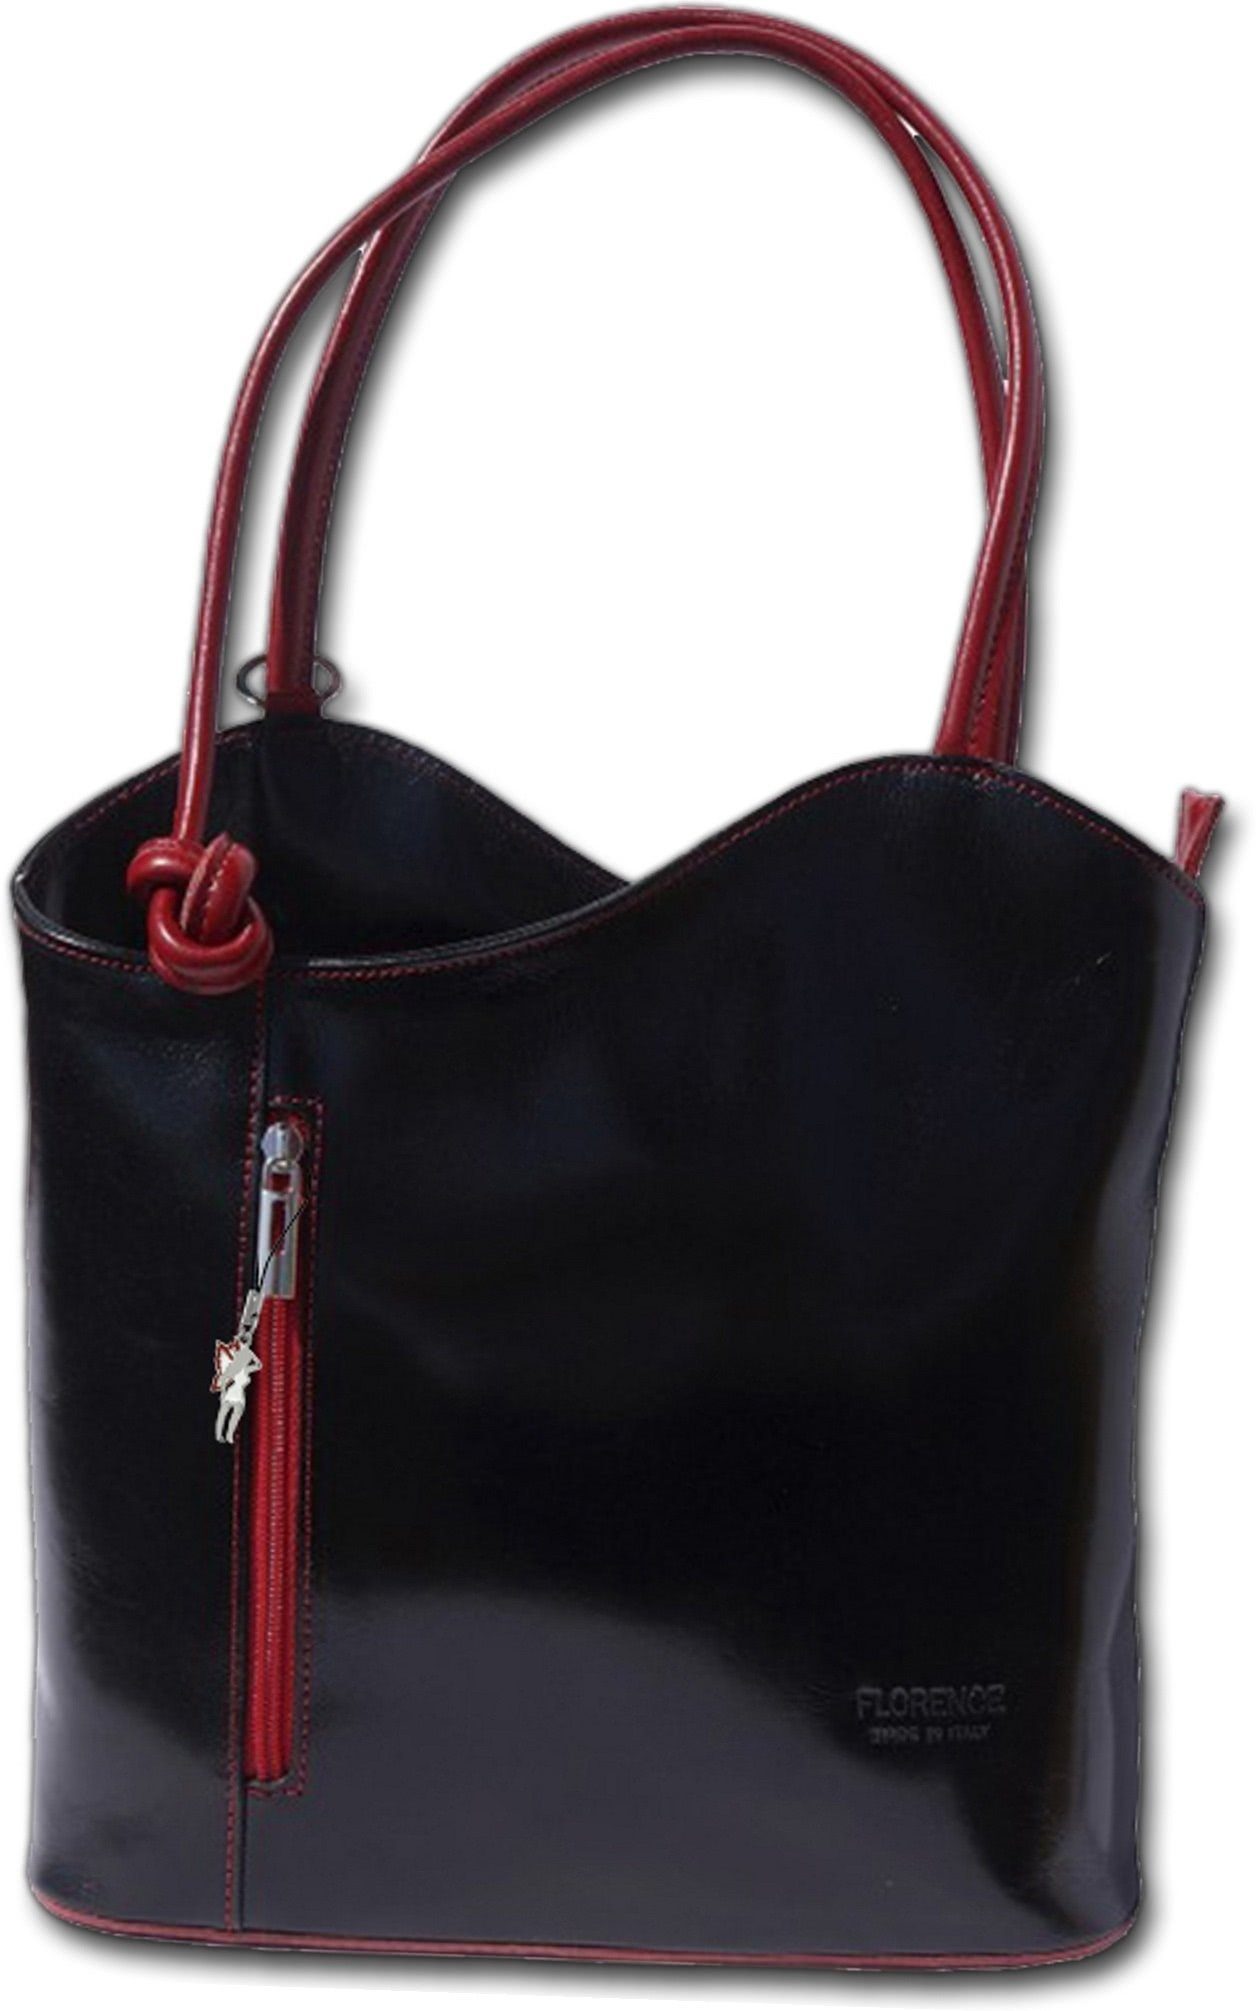 FLORENCE Schultertasche »D2OTF106S Florence 2in1 Echtleder Damentasche« ( Schultertasche), Damen Tasche, Rucksack aus Echtleder in schwarz, rot,  Made-In Italy online kaufen | OTTO